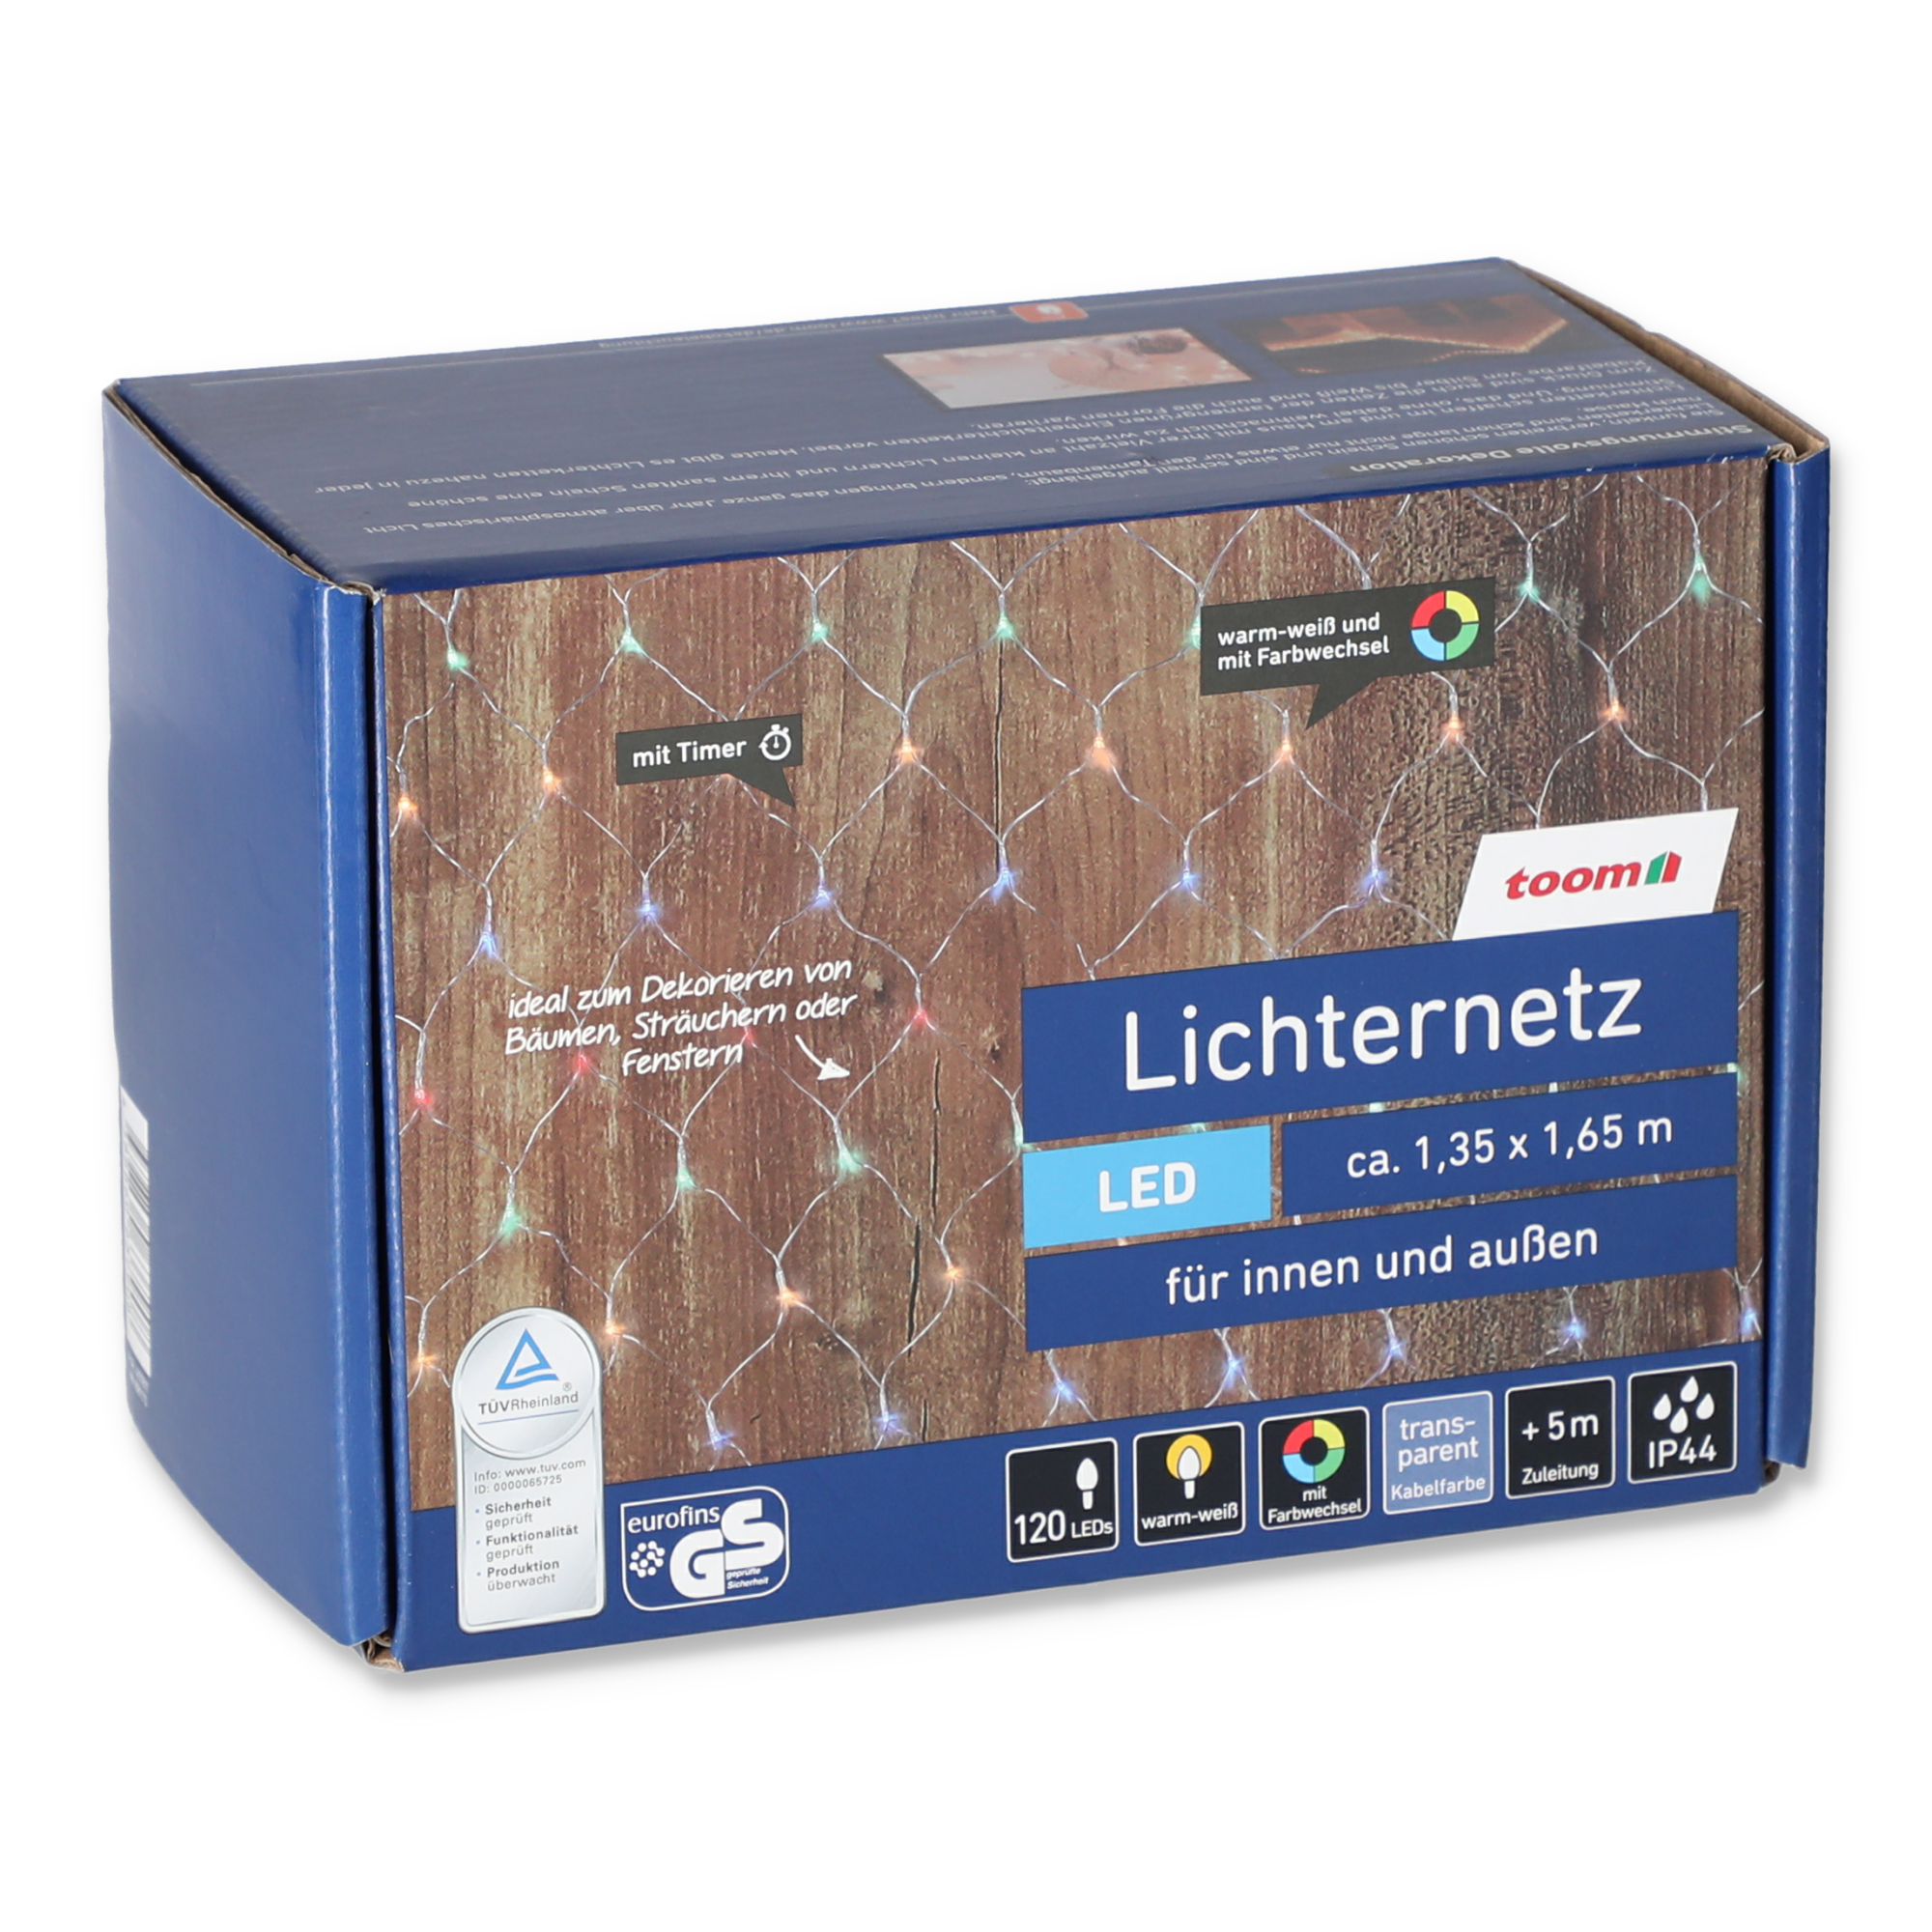 LED-Lichternetz 120 LEDs warmweiß/bunt 135 x 165 cm + product picture